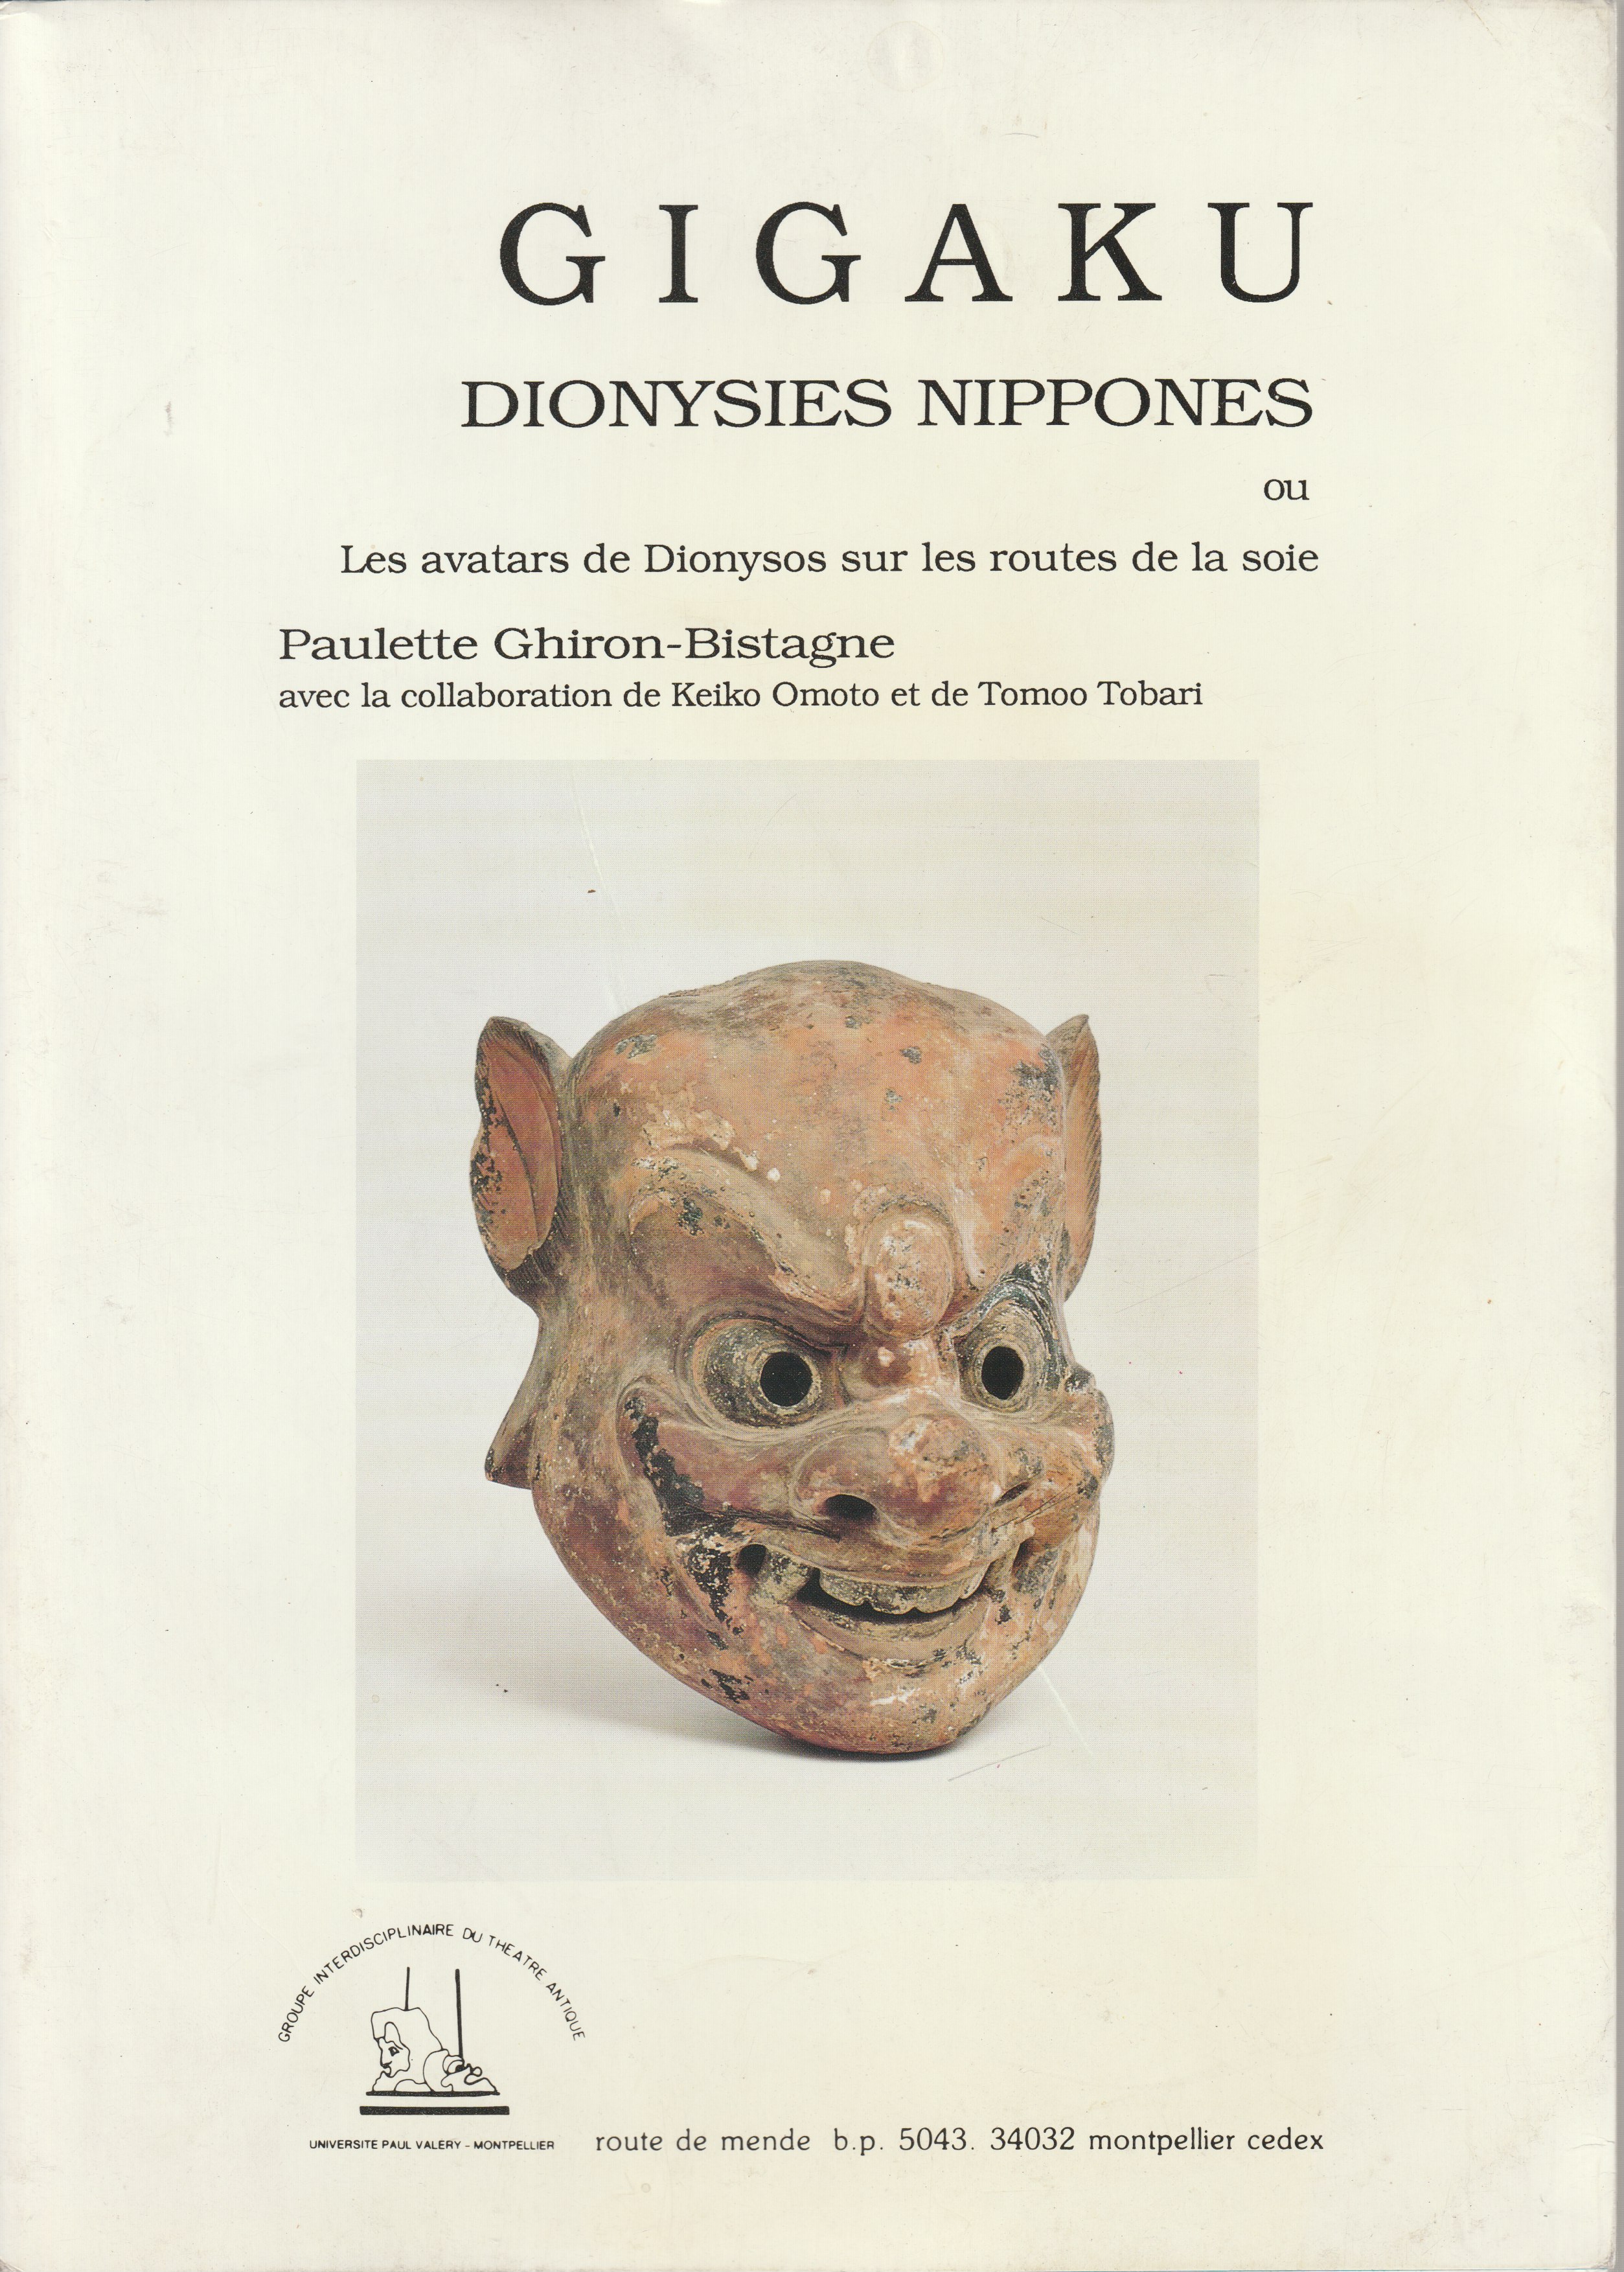 Gigaku : dionysies nippones ou les avatars de Dionysos sur les routes de la soie